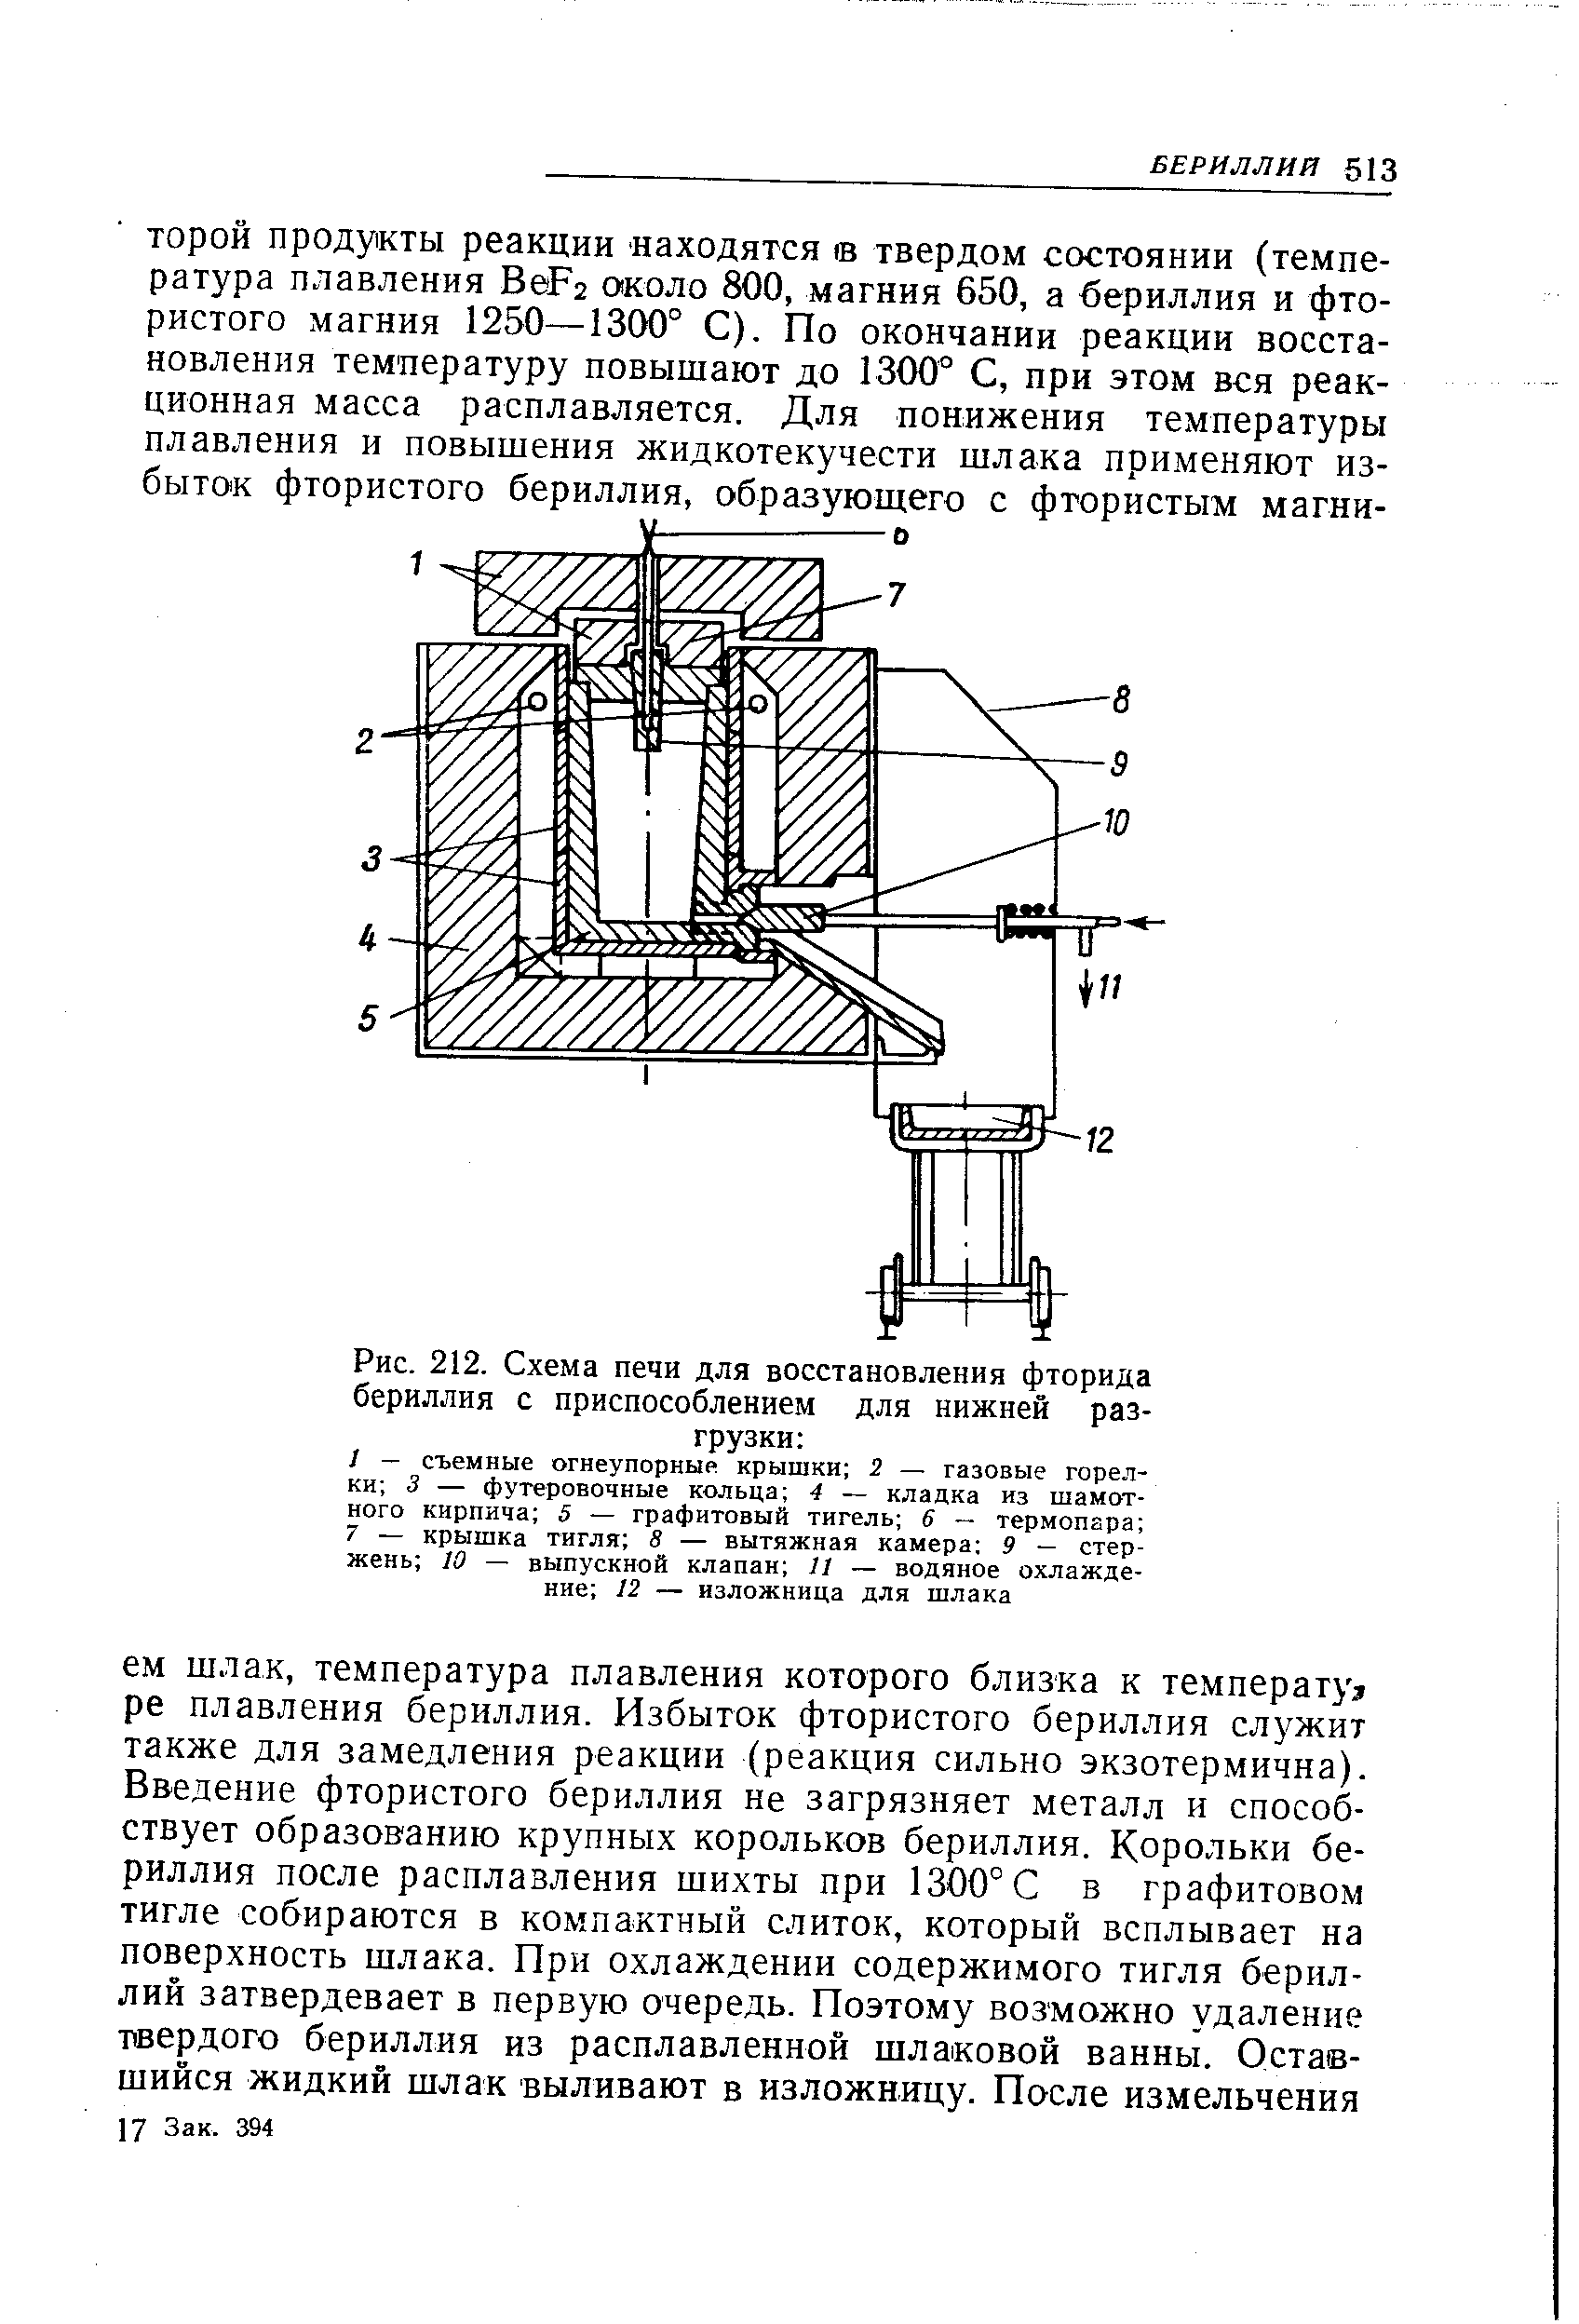 Рис. 212. Схема печи для восстановления фторида бериллия с приспособлением для нижней разгрузки 
